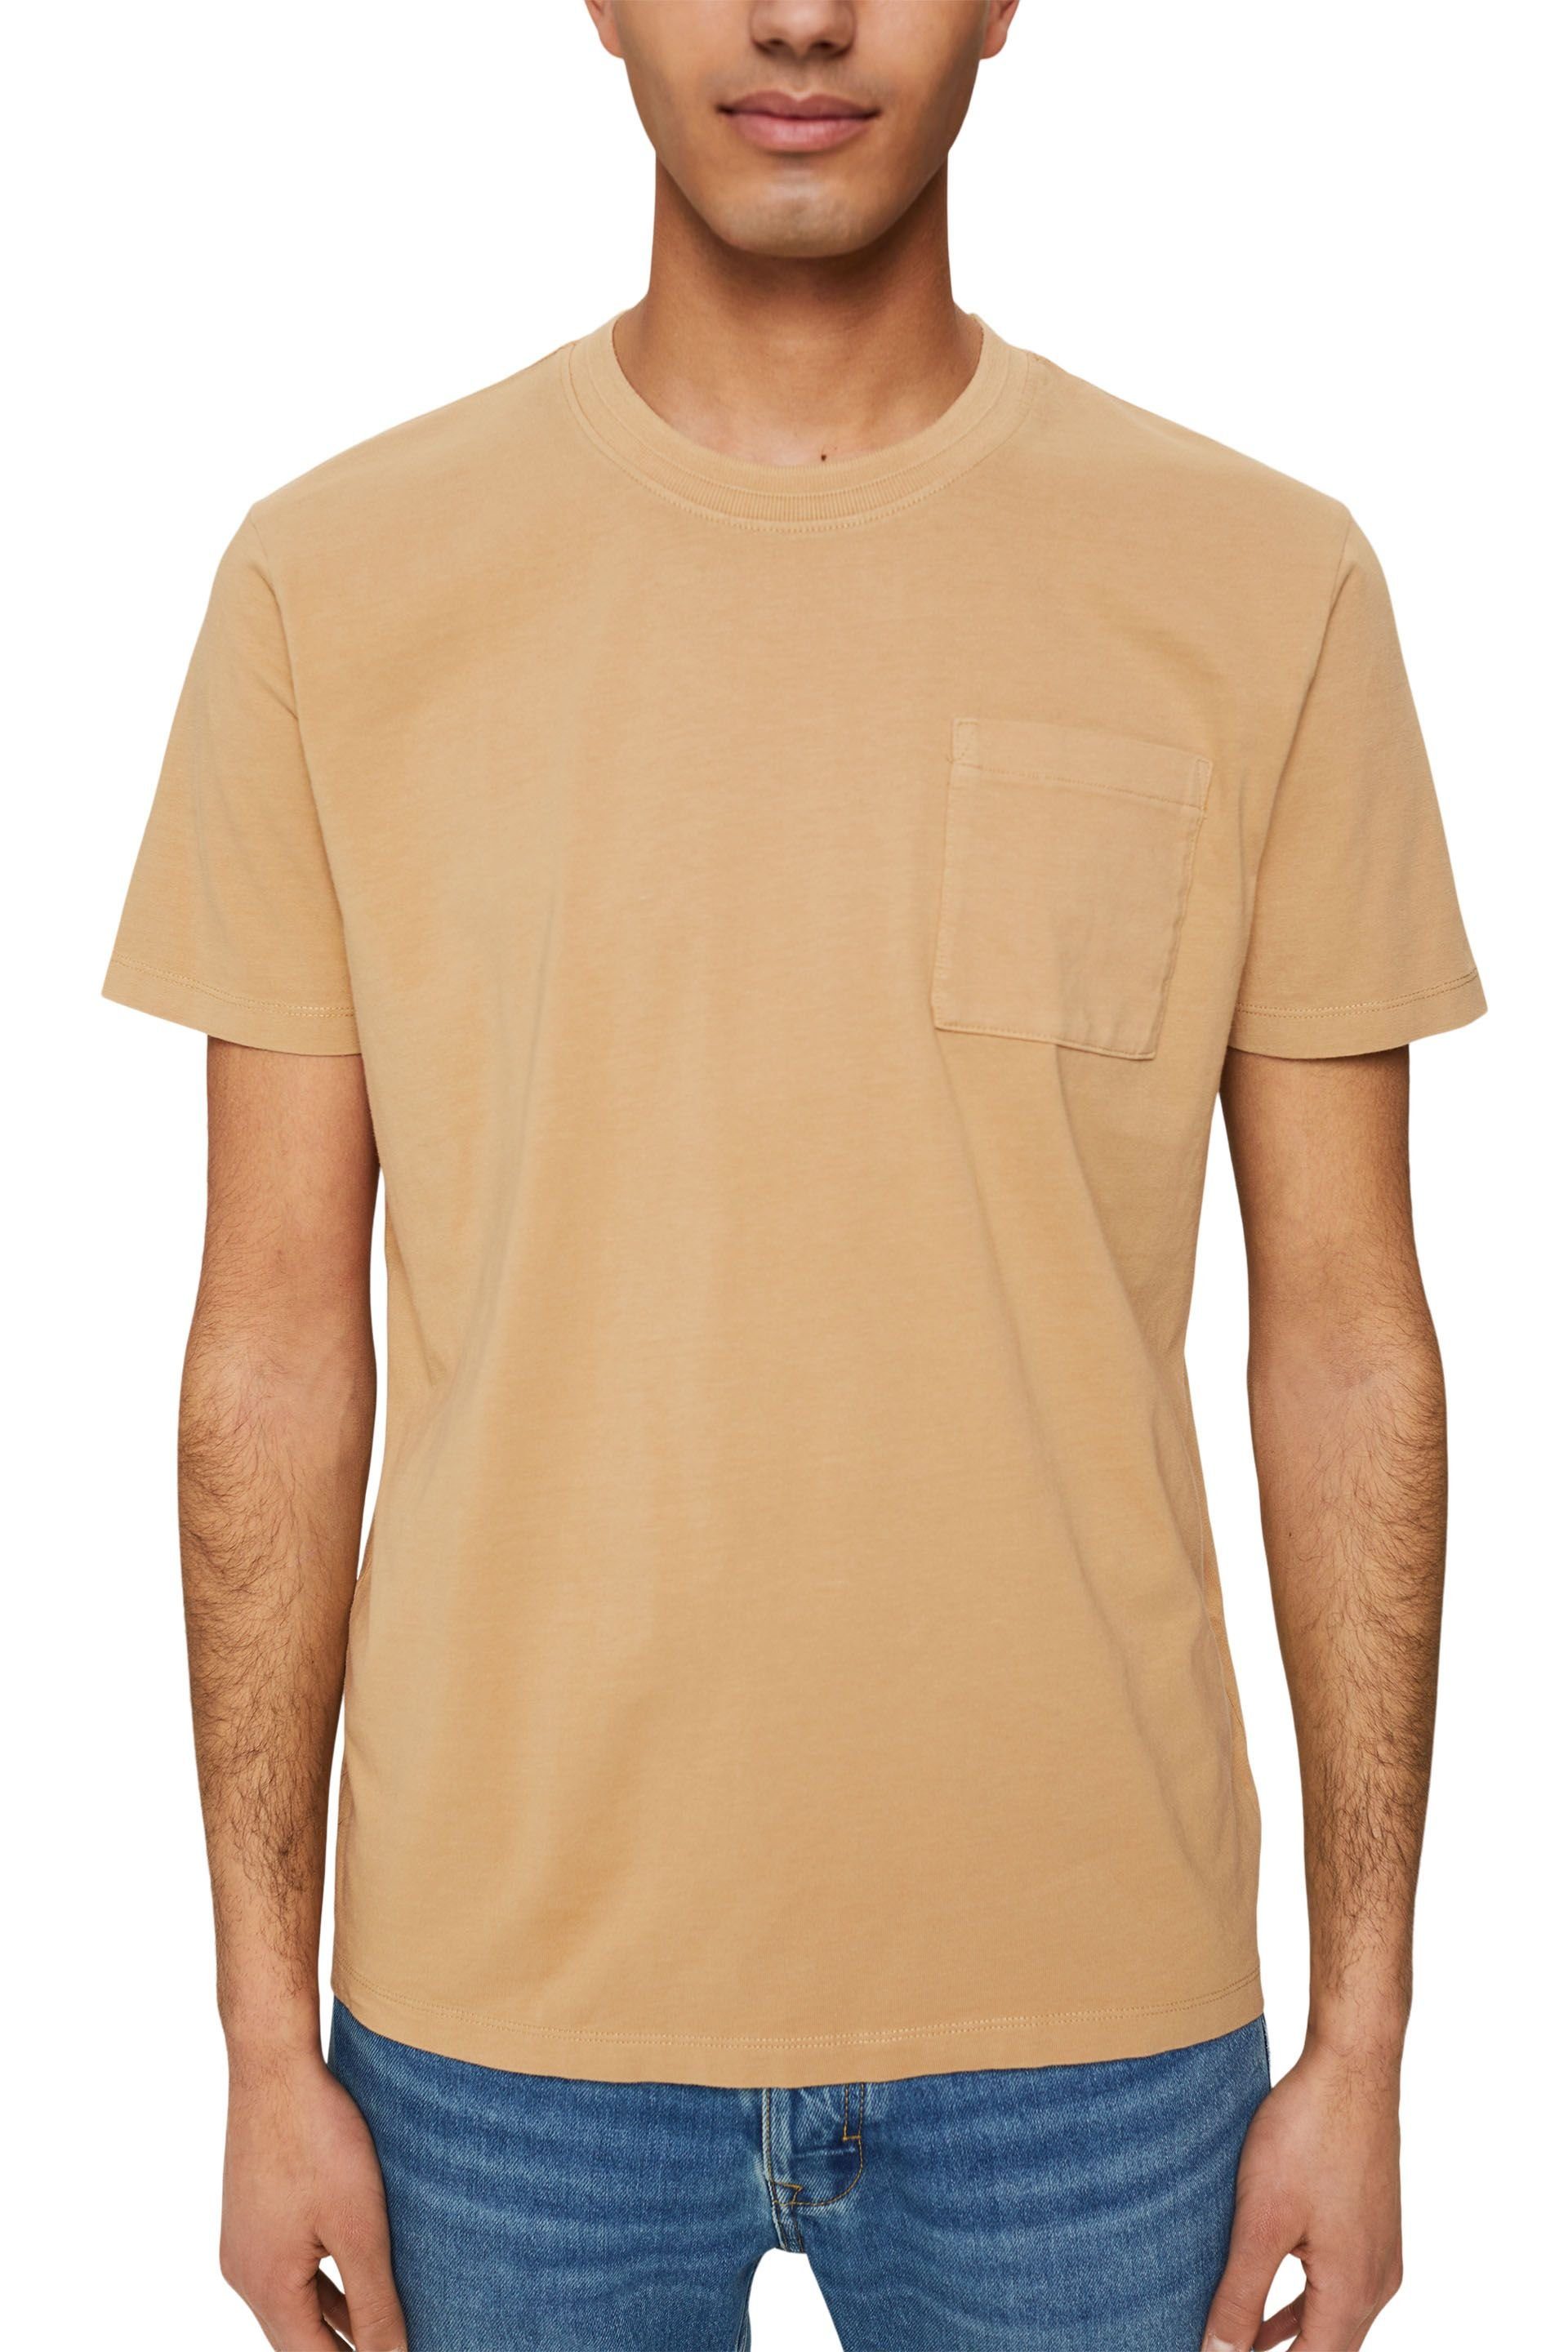 Esprit T-Shirt beige